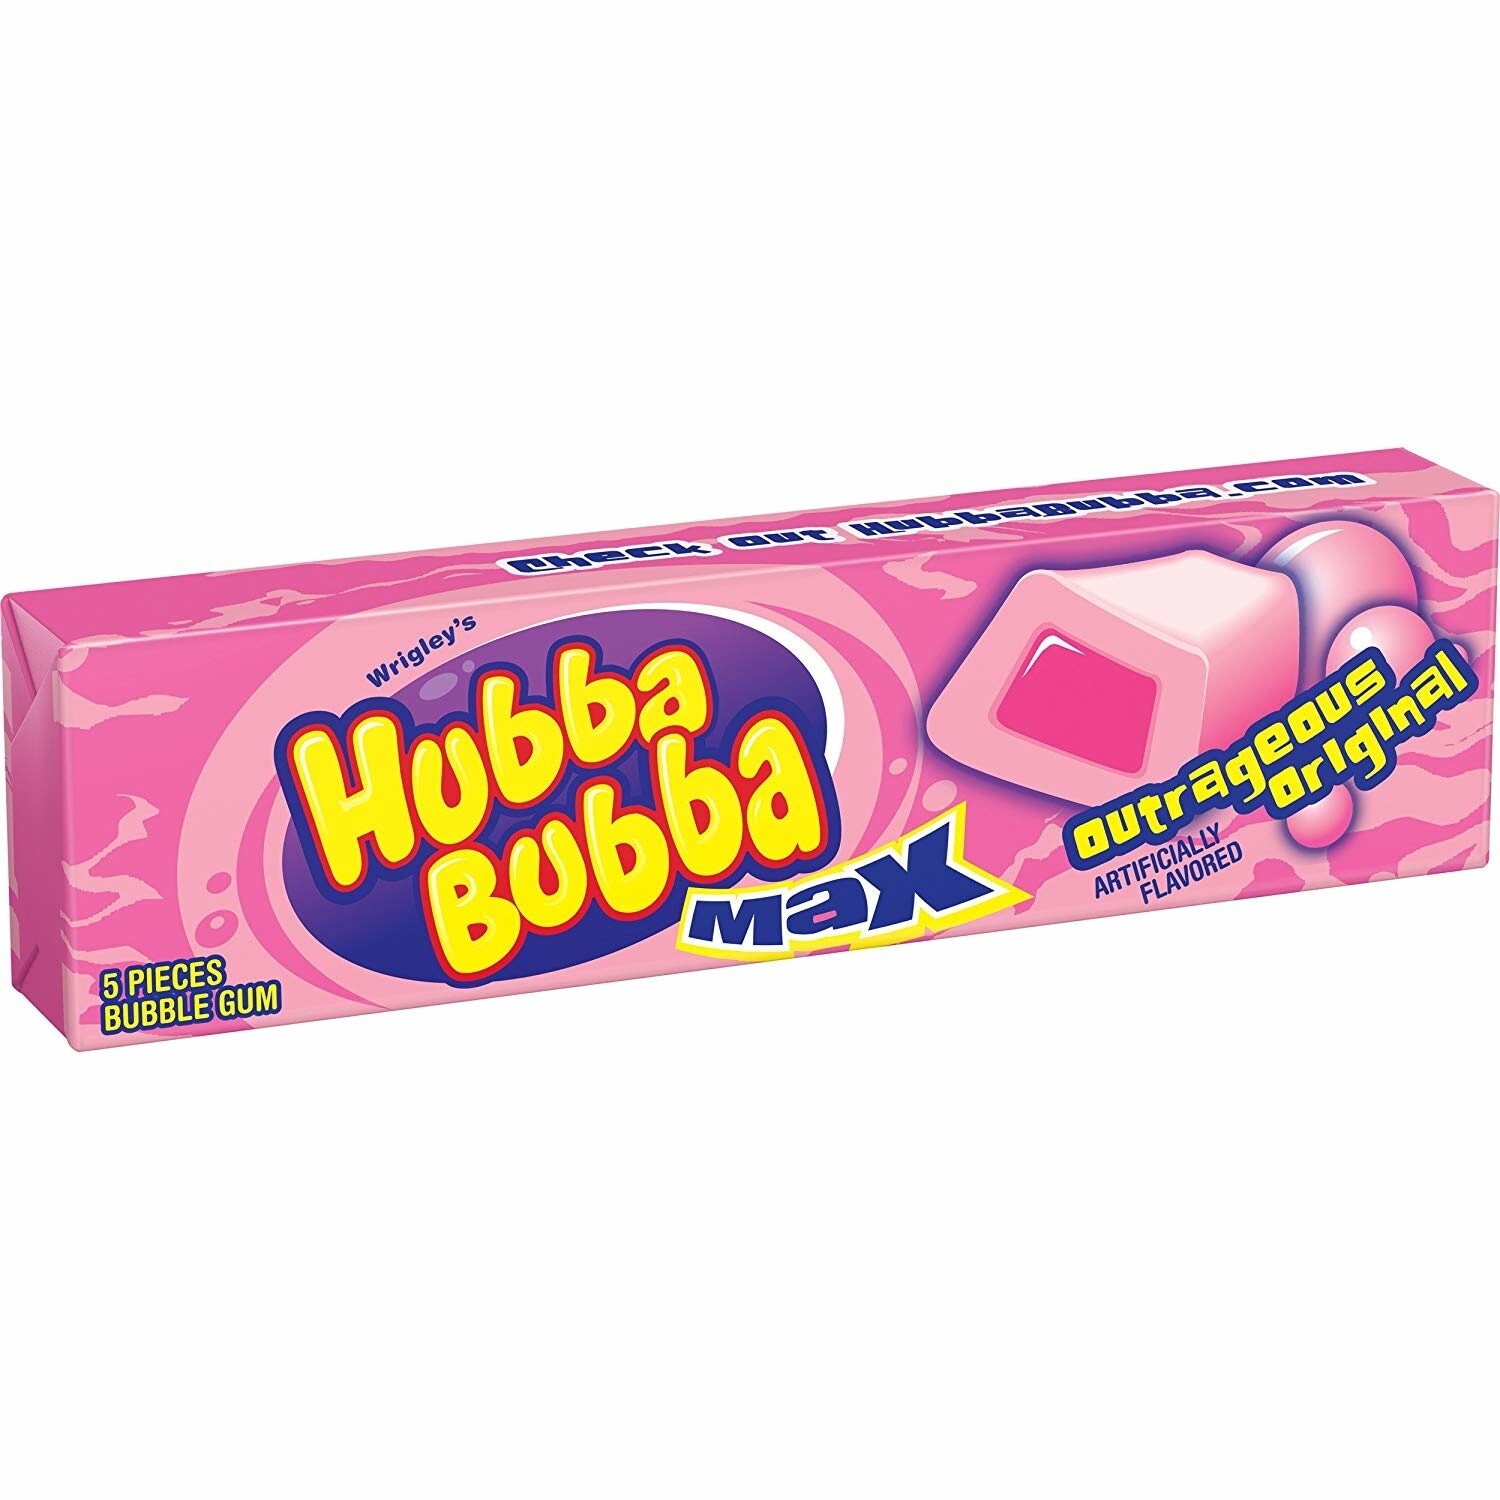 Hubba Bubba- Bubble Gum